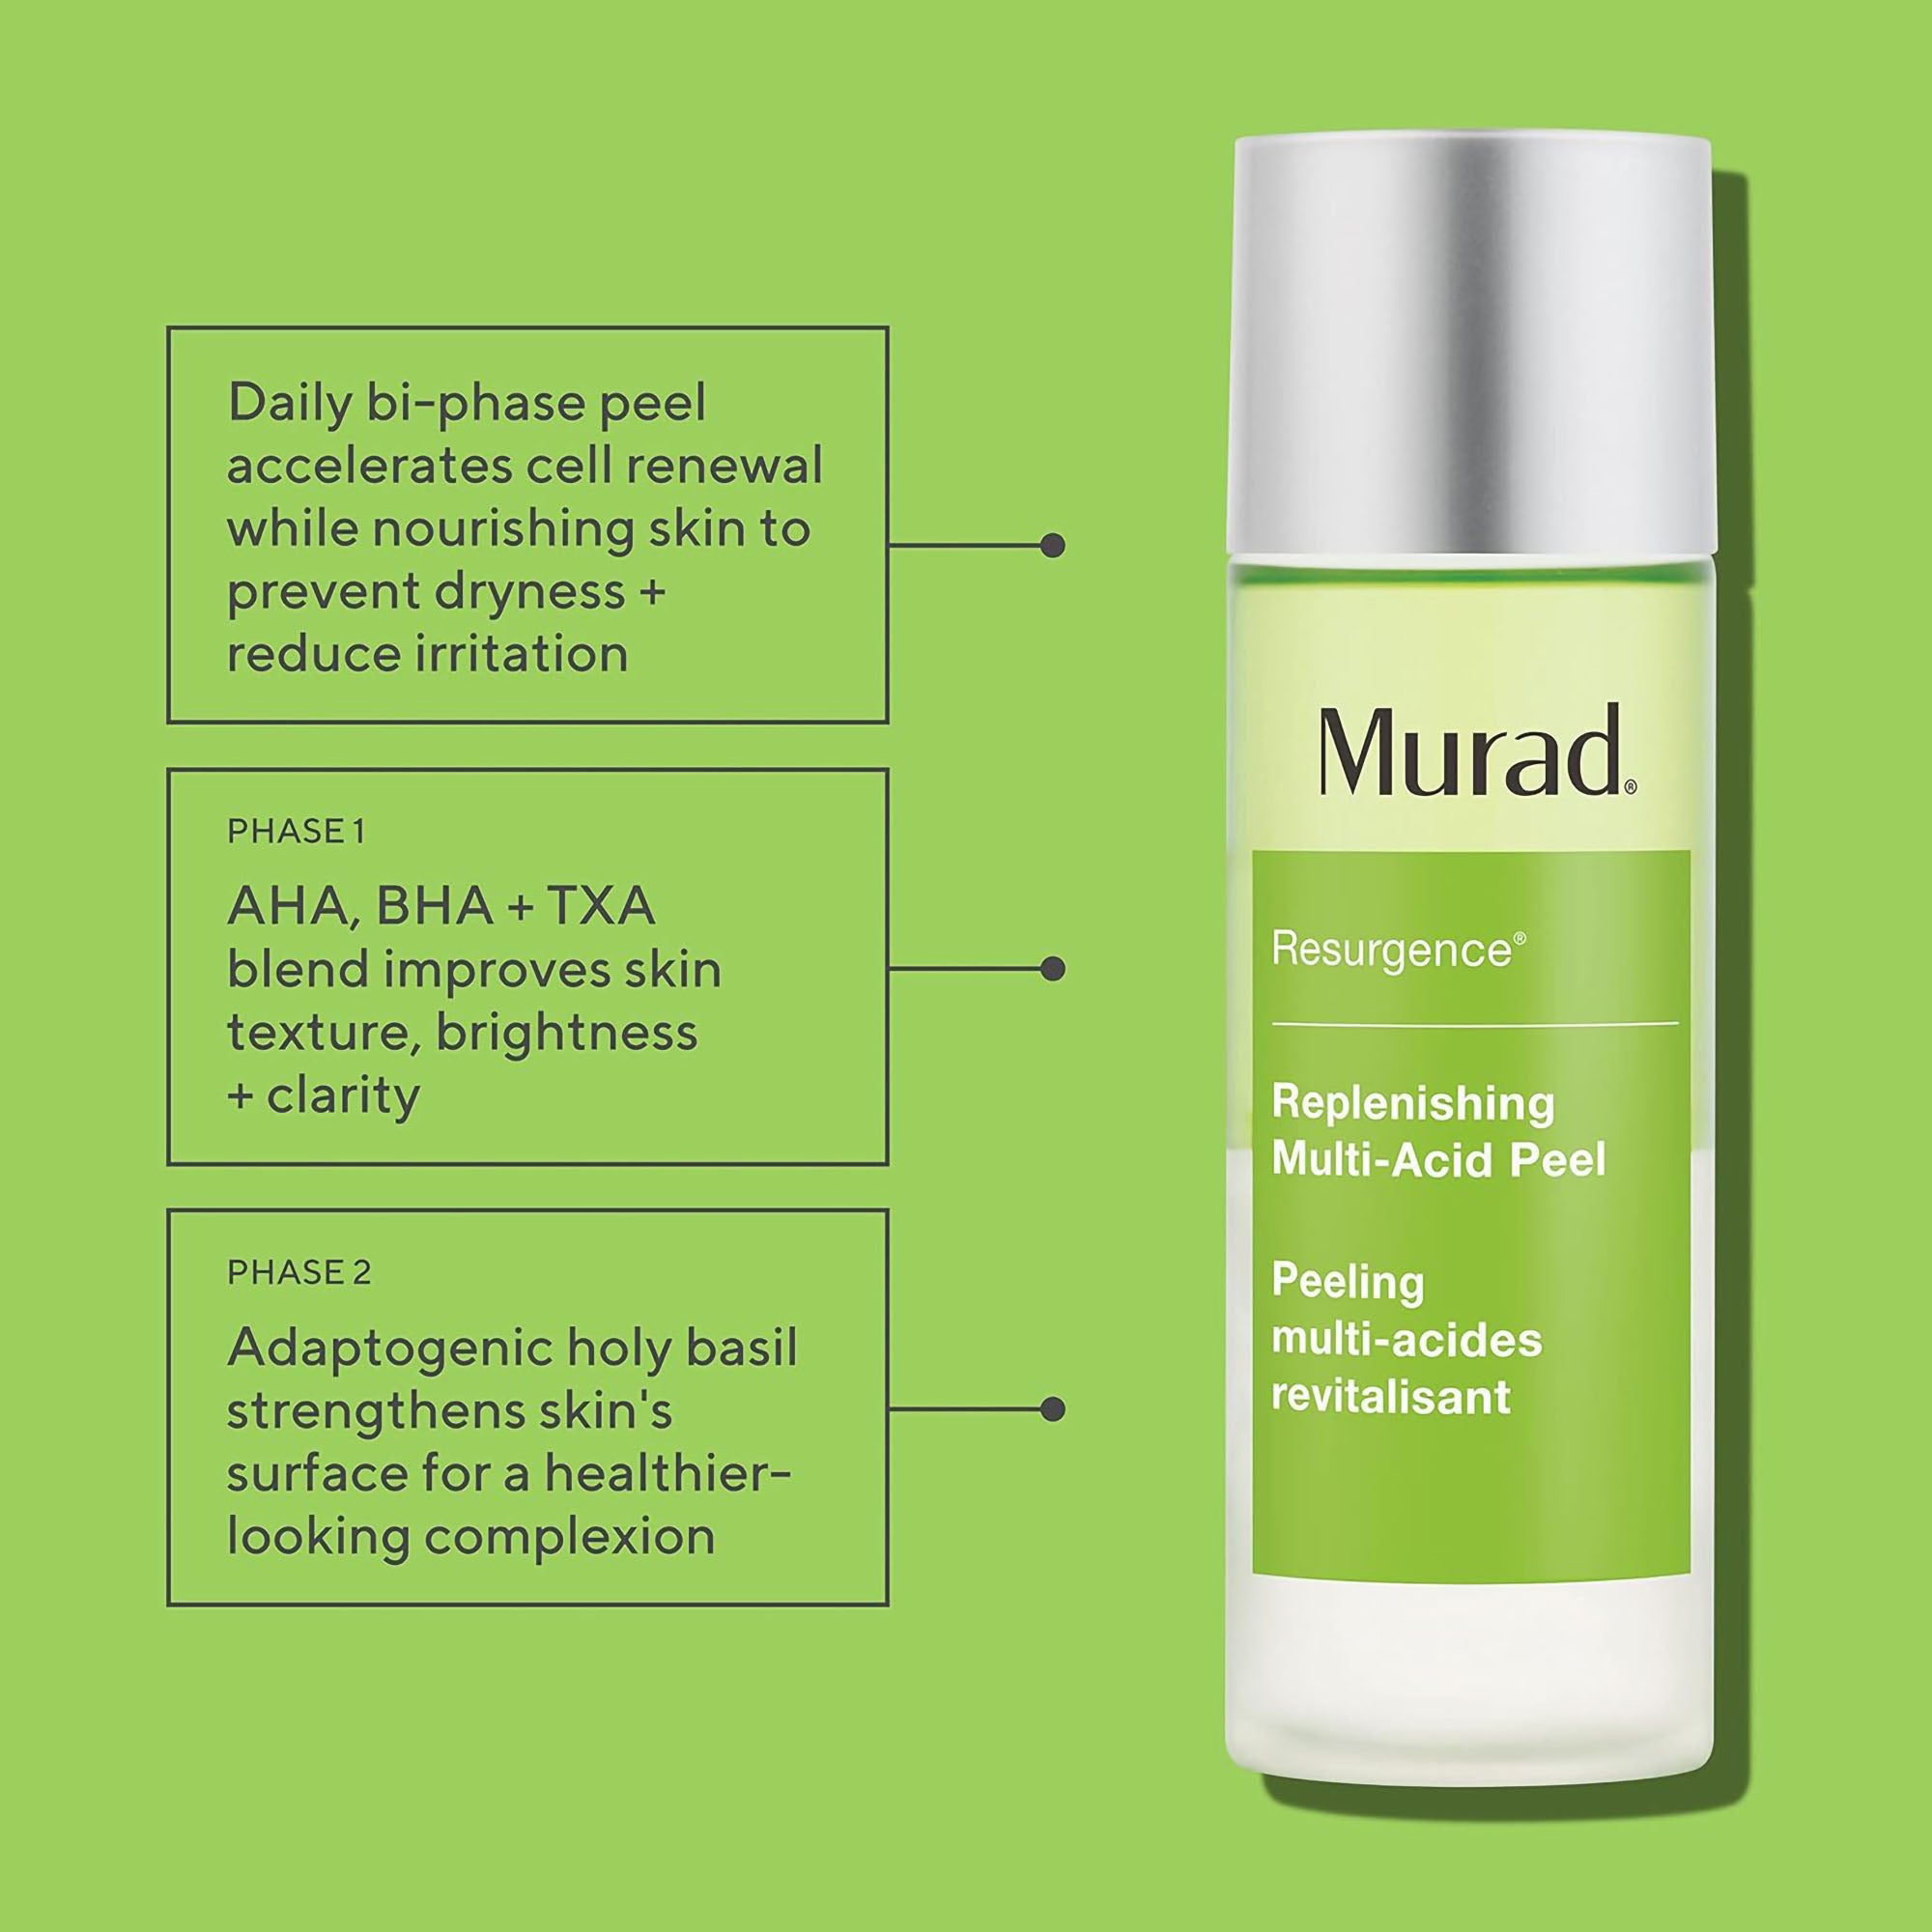 Murad Resurgence Replenishing Multi-Acid Peel / 3OZ